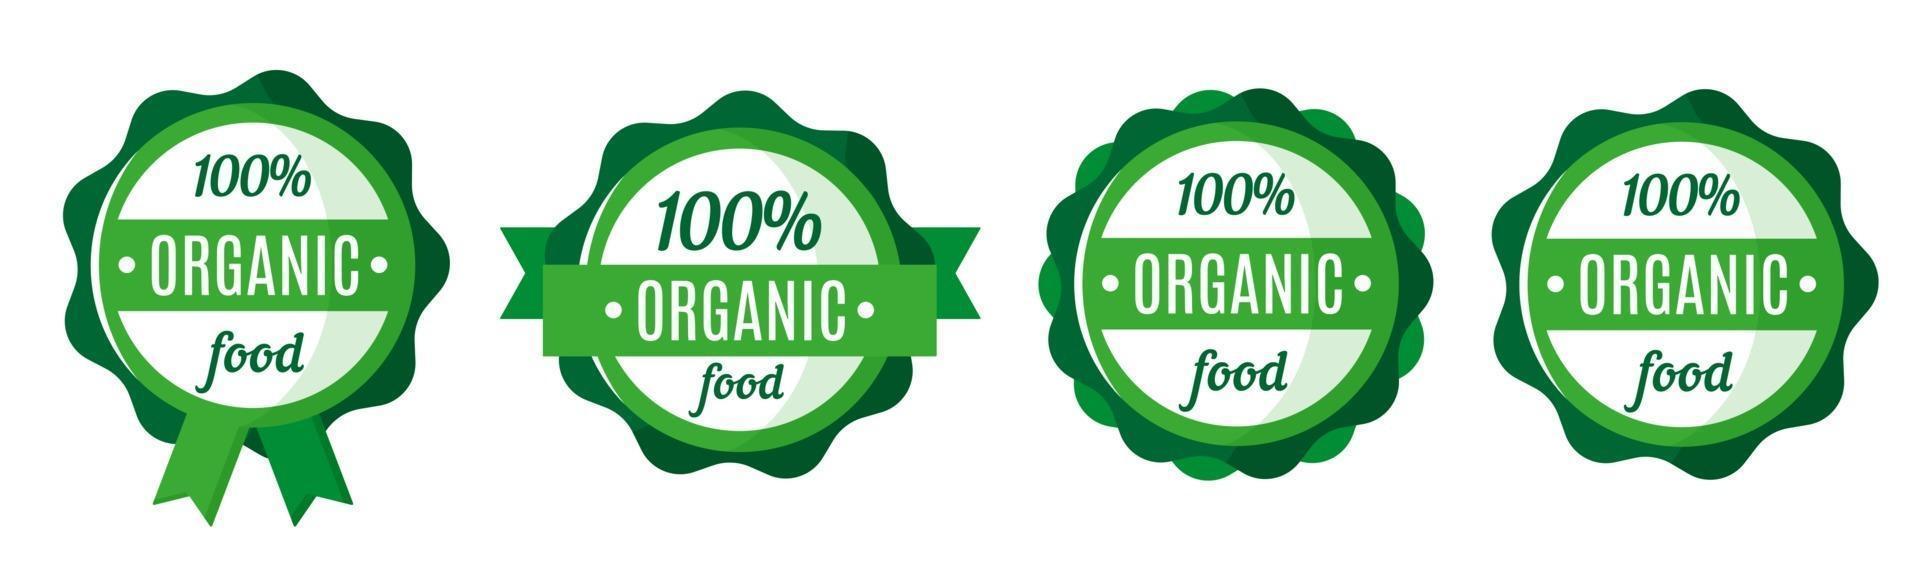 ensemble de vecteurs de badges, étiquettes ou étiquettes de nourriture fraîche et organique verte ronde. conception d'étiquettes de marché écologique. achats éco-alimentaires. vecteur